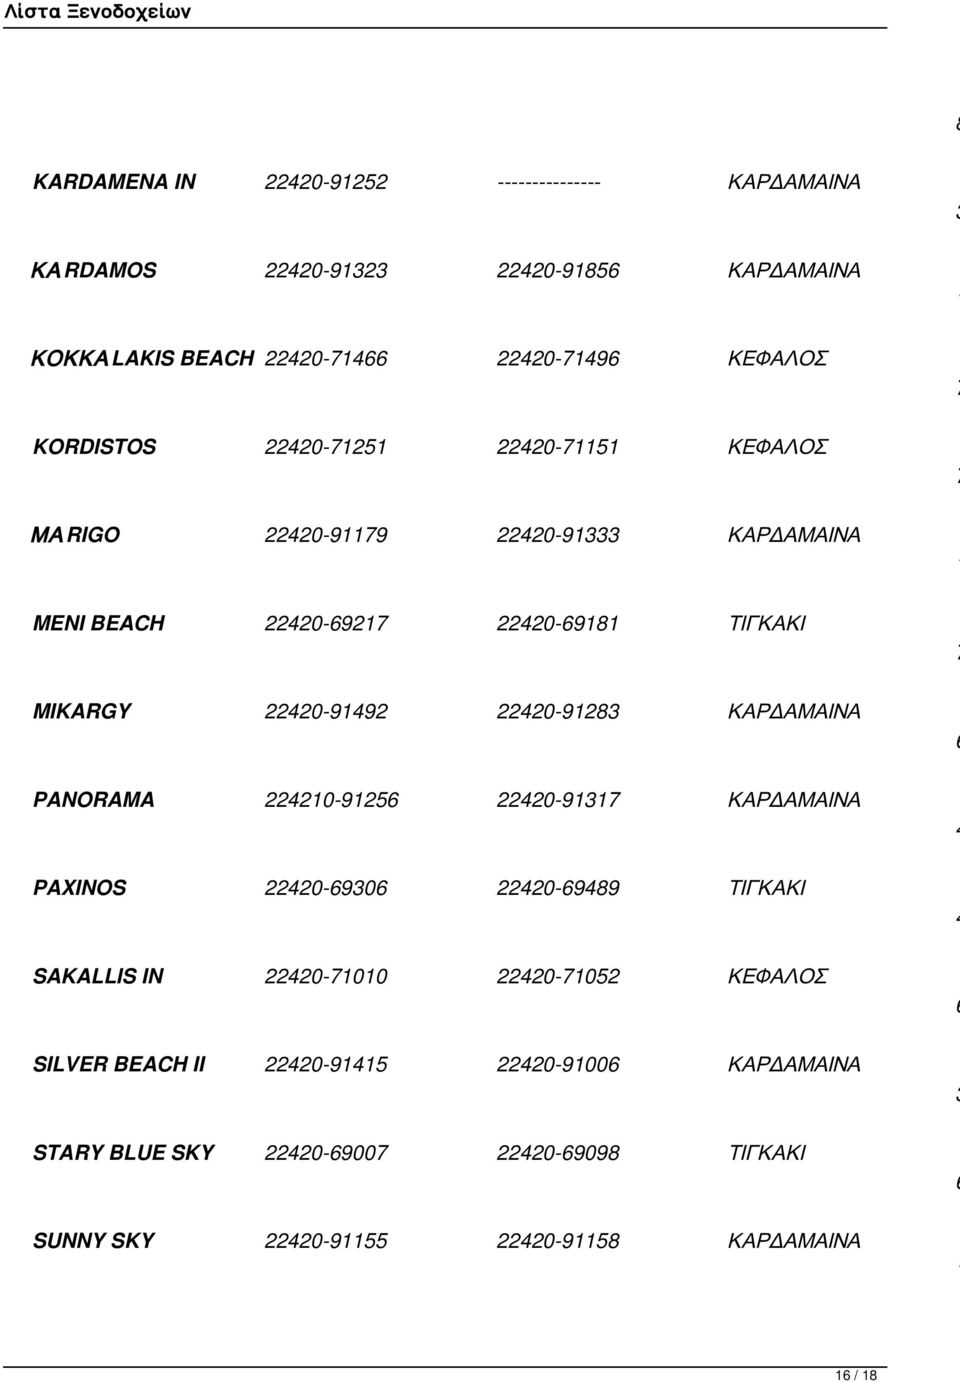 MIKARGY 0-99 0-9 ΚΑΡΔΑΜΑΙΝΑ PANORAMA 0-9 0-9 ΚΑΡΔΑΜΑΙΝΑ PAXINOS 0-90 0-99 ΤΙΓΚΑΚΙ SAKALLIS IN 0-00 0-0